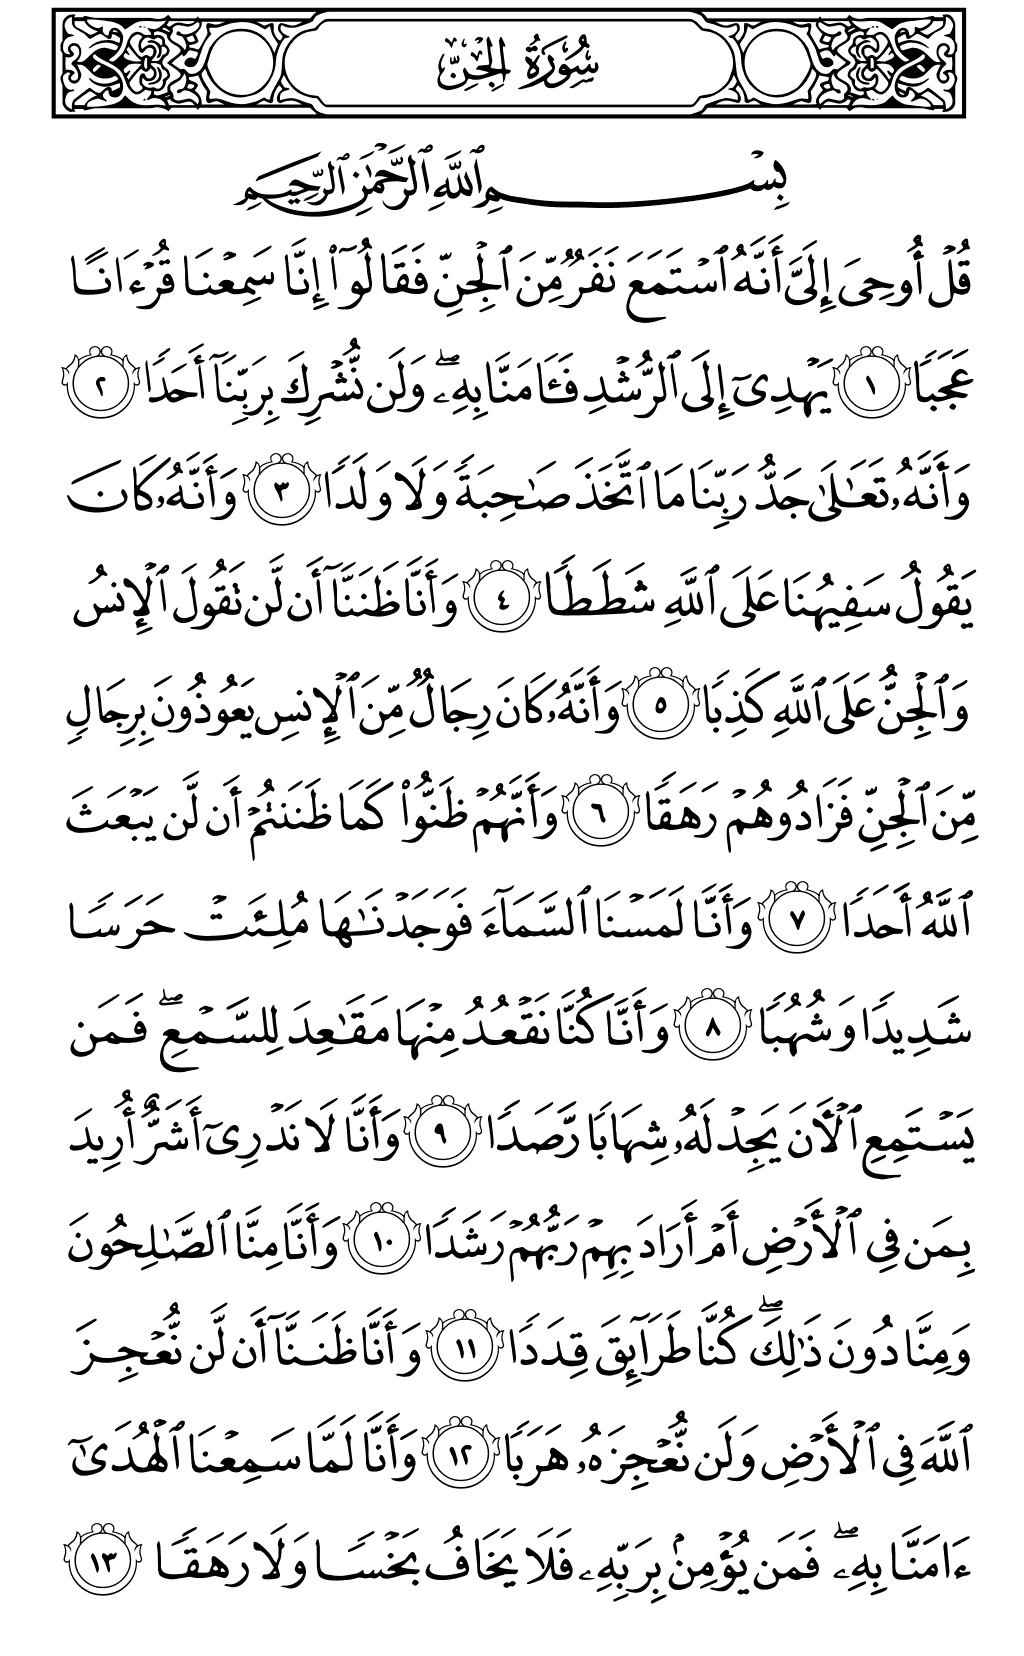 الصفحة رقم 572 من القرآن الكريم